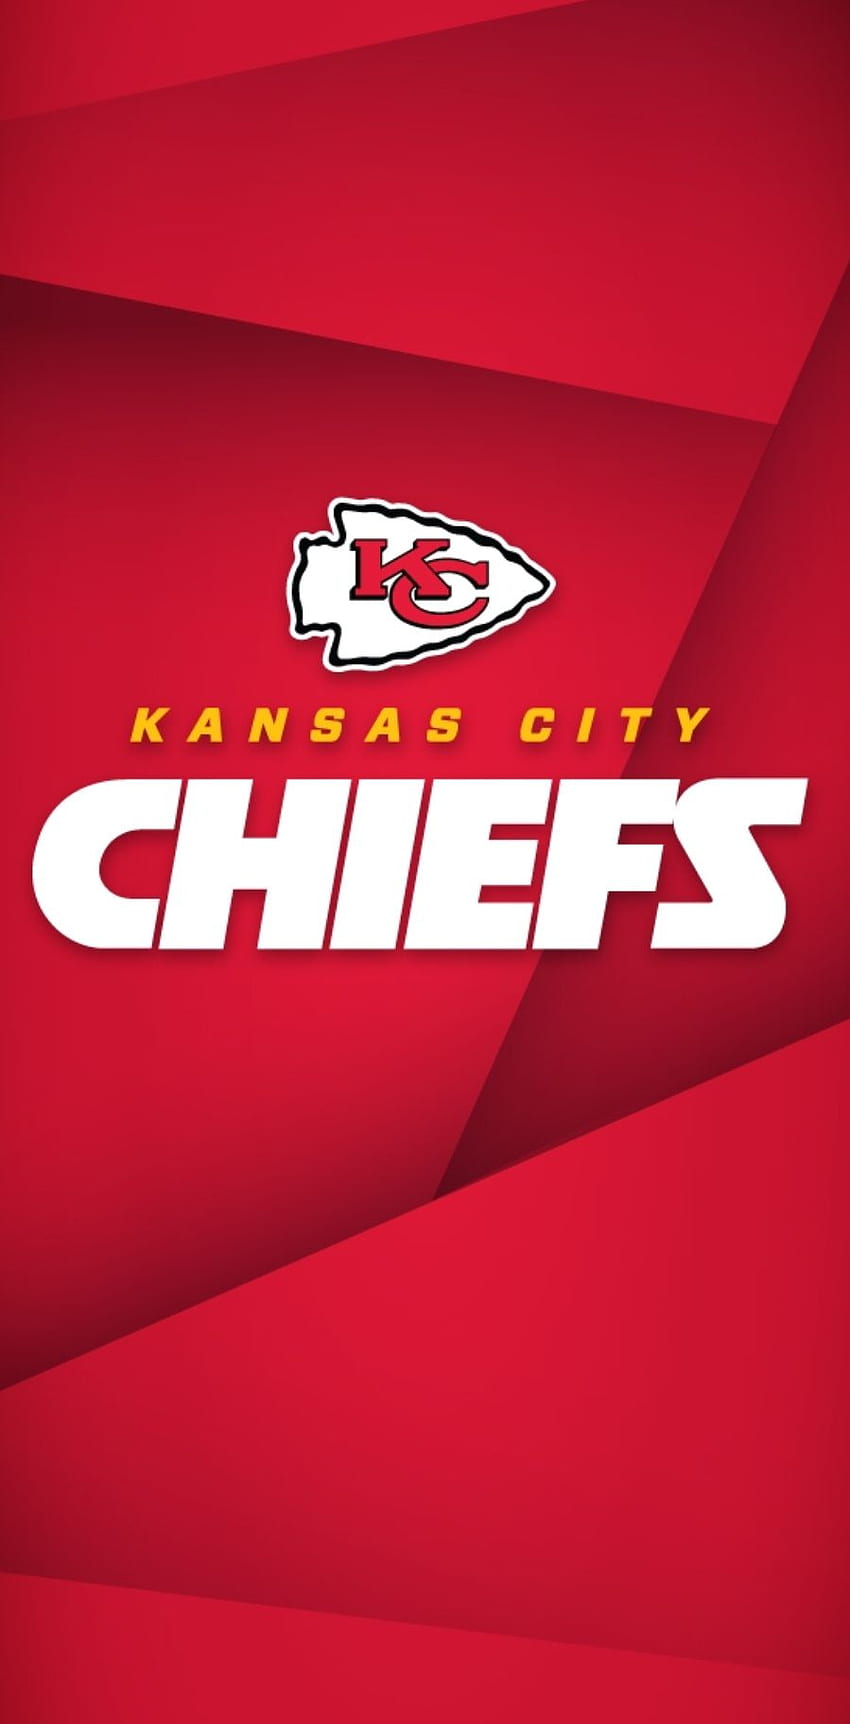 Kansas City Chiefs Wallpapers  Top 25 Best Kansas City Chiefs Backgrounds